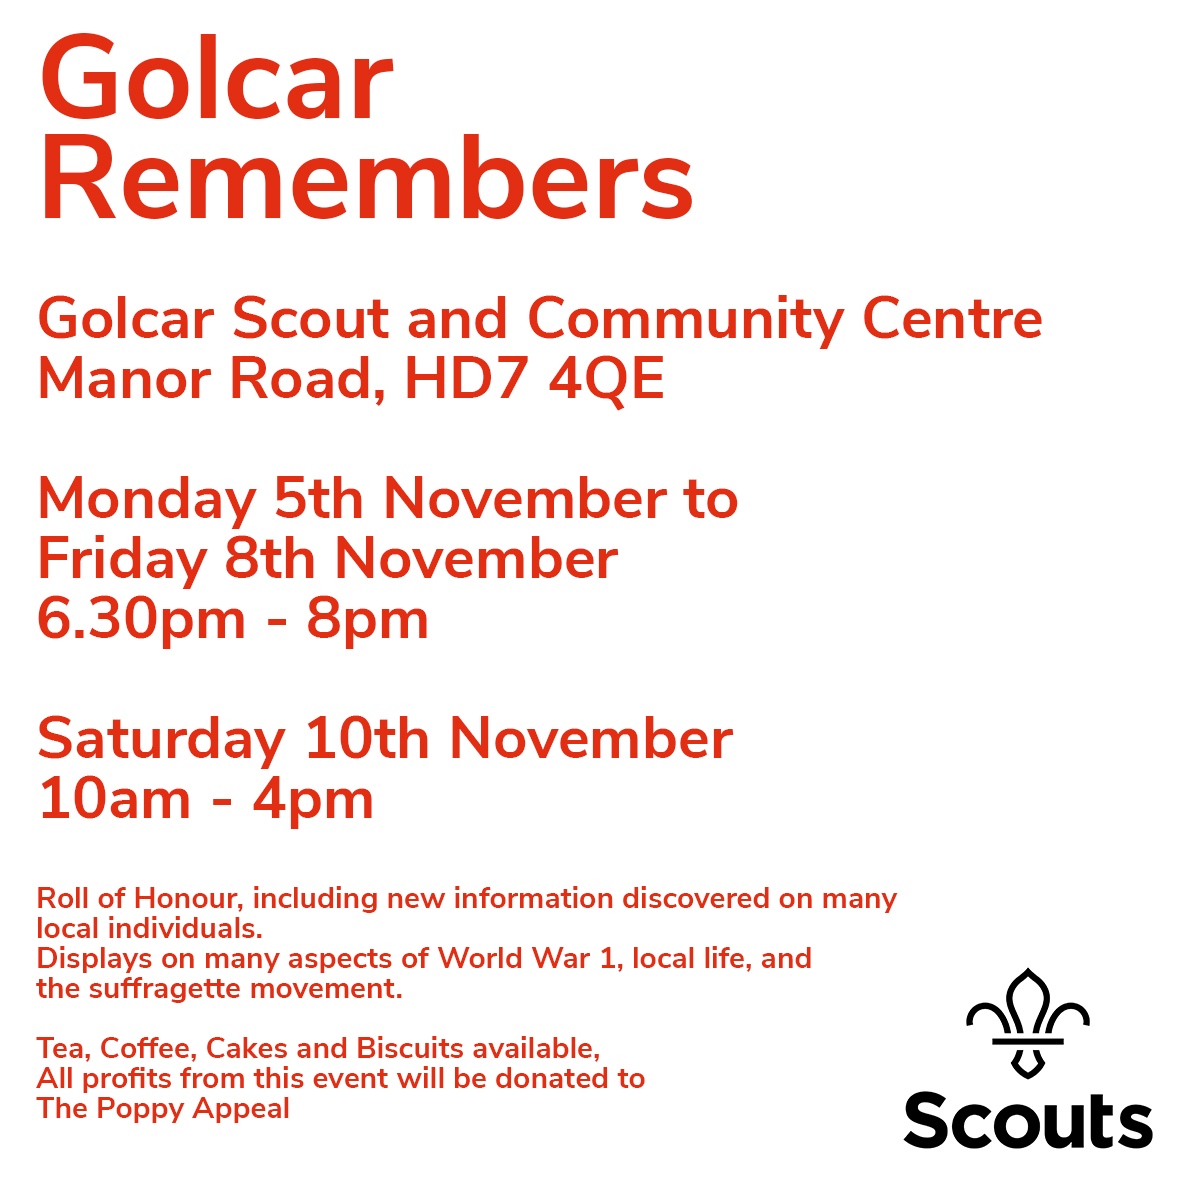 Golcar-Remembers